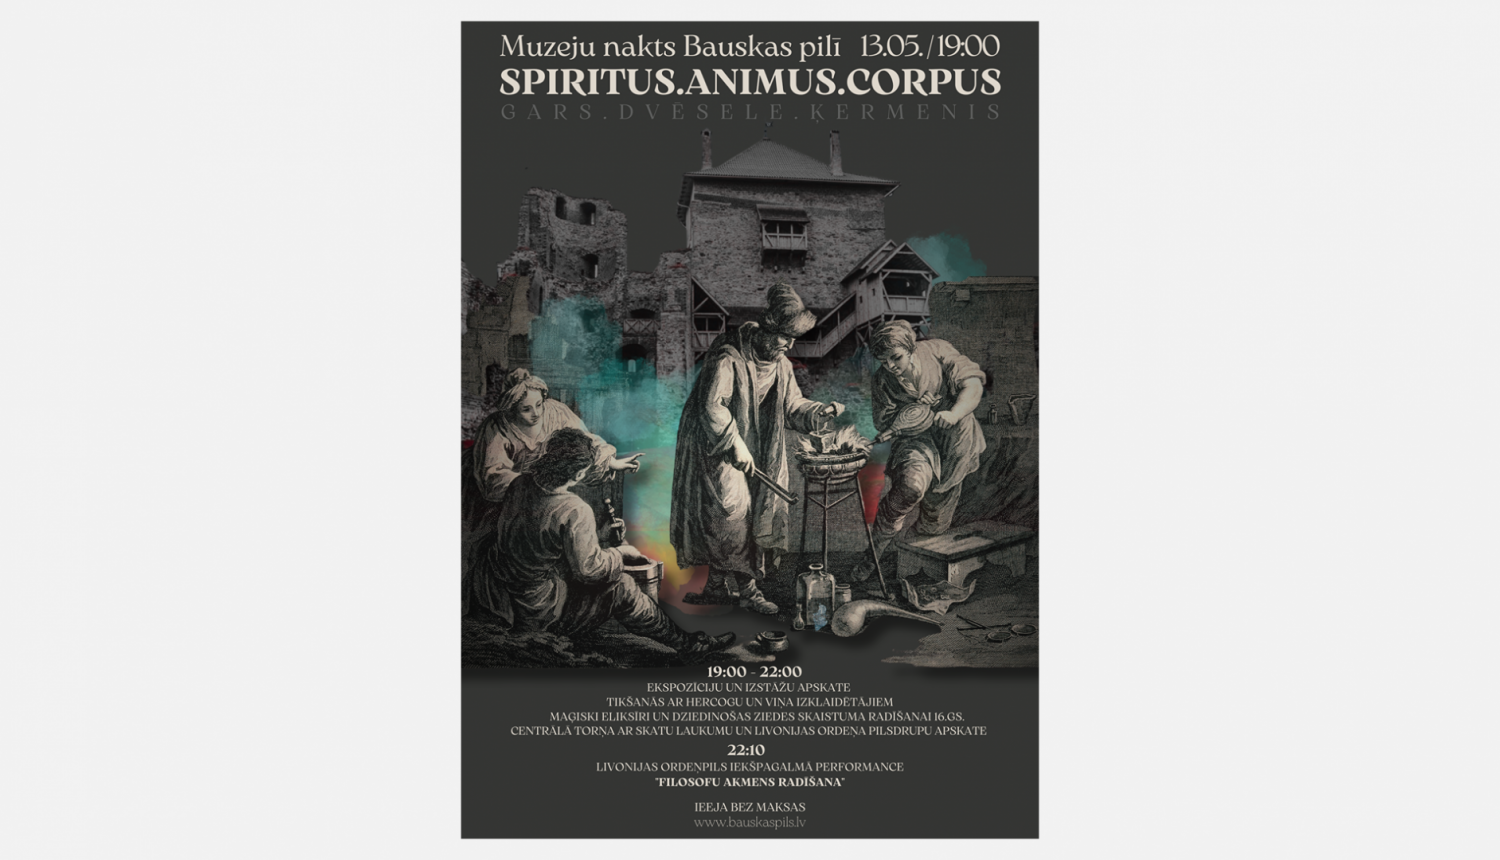 Muzeju nakts Bauskas pilī “ Spiritus, Aminus, Corpus” plakāts